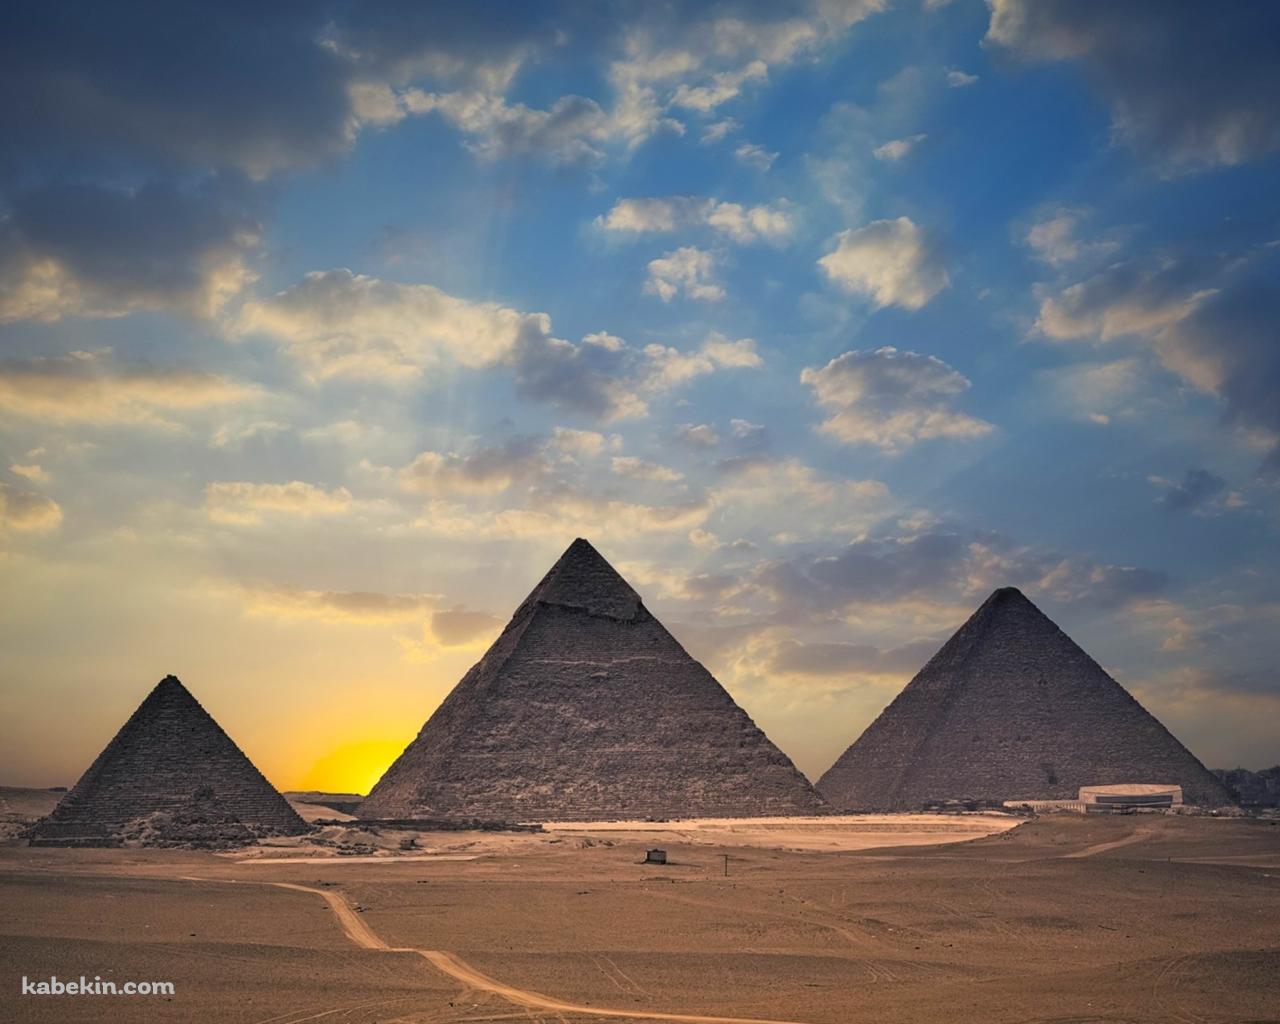 エジプトの並んだピラミッドの壁紙(1280px x 1024px) 高画質 PC・デスクトップ用